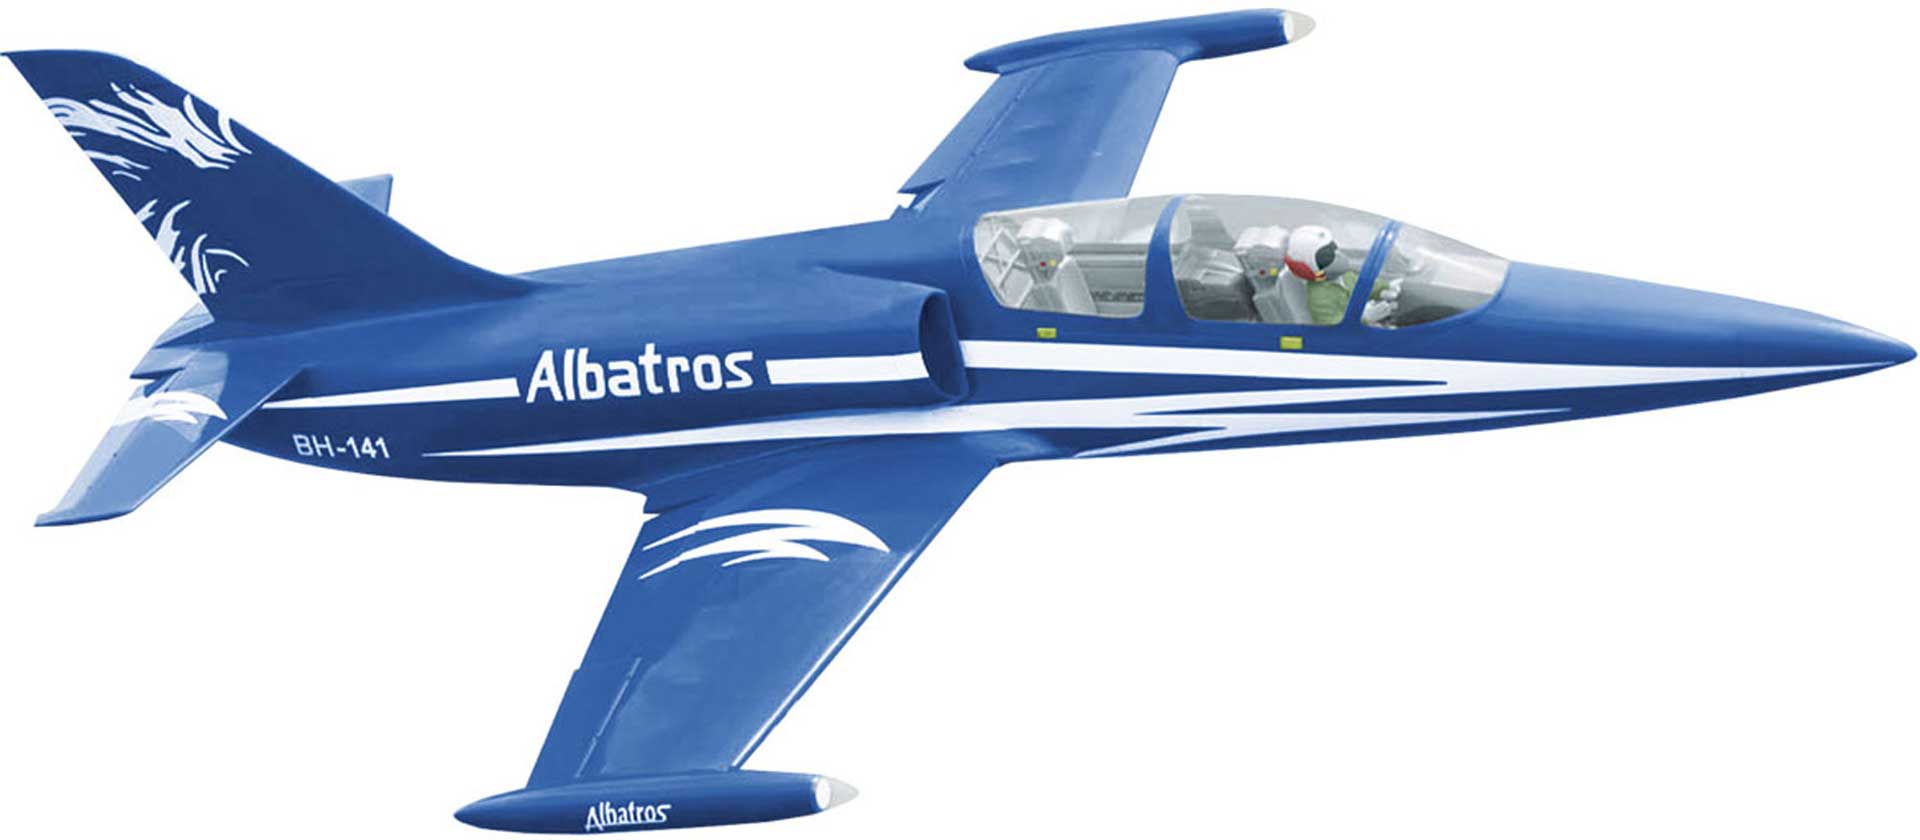 BLACK HORSE Albatros L-39 (bleu) / 1450mm ARF JET ( BH141 )